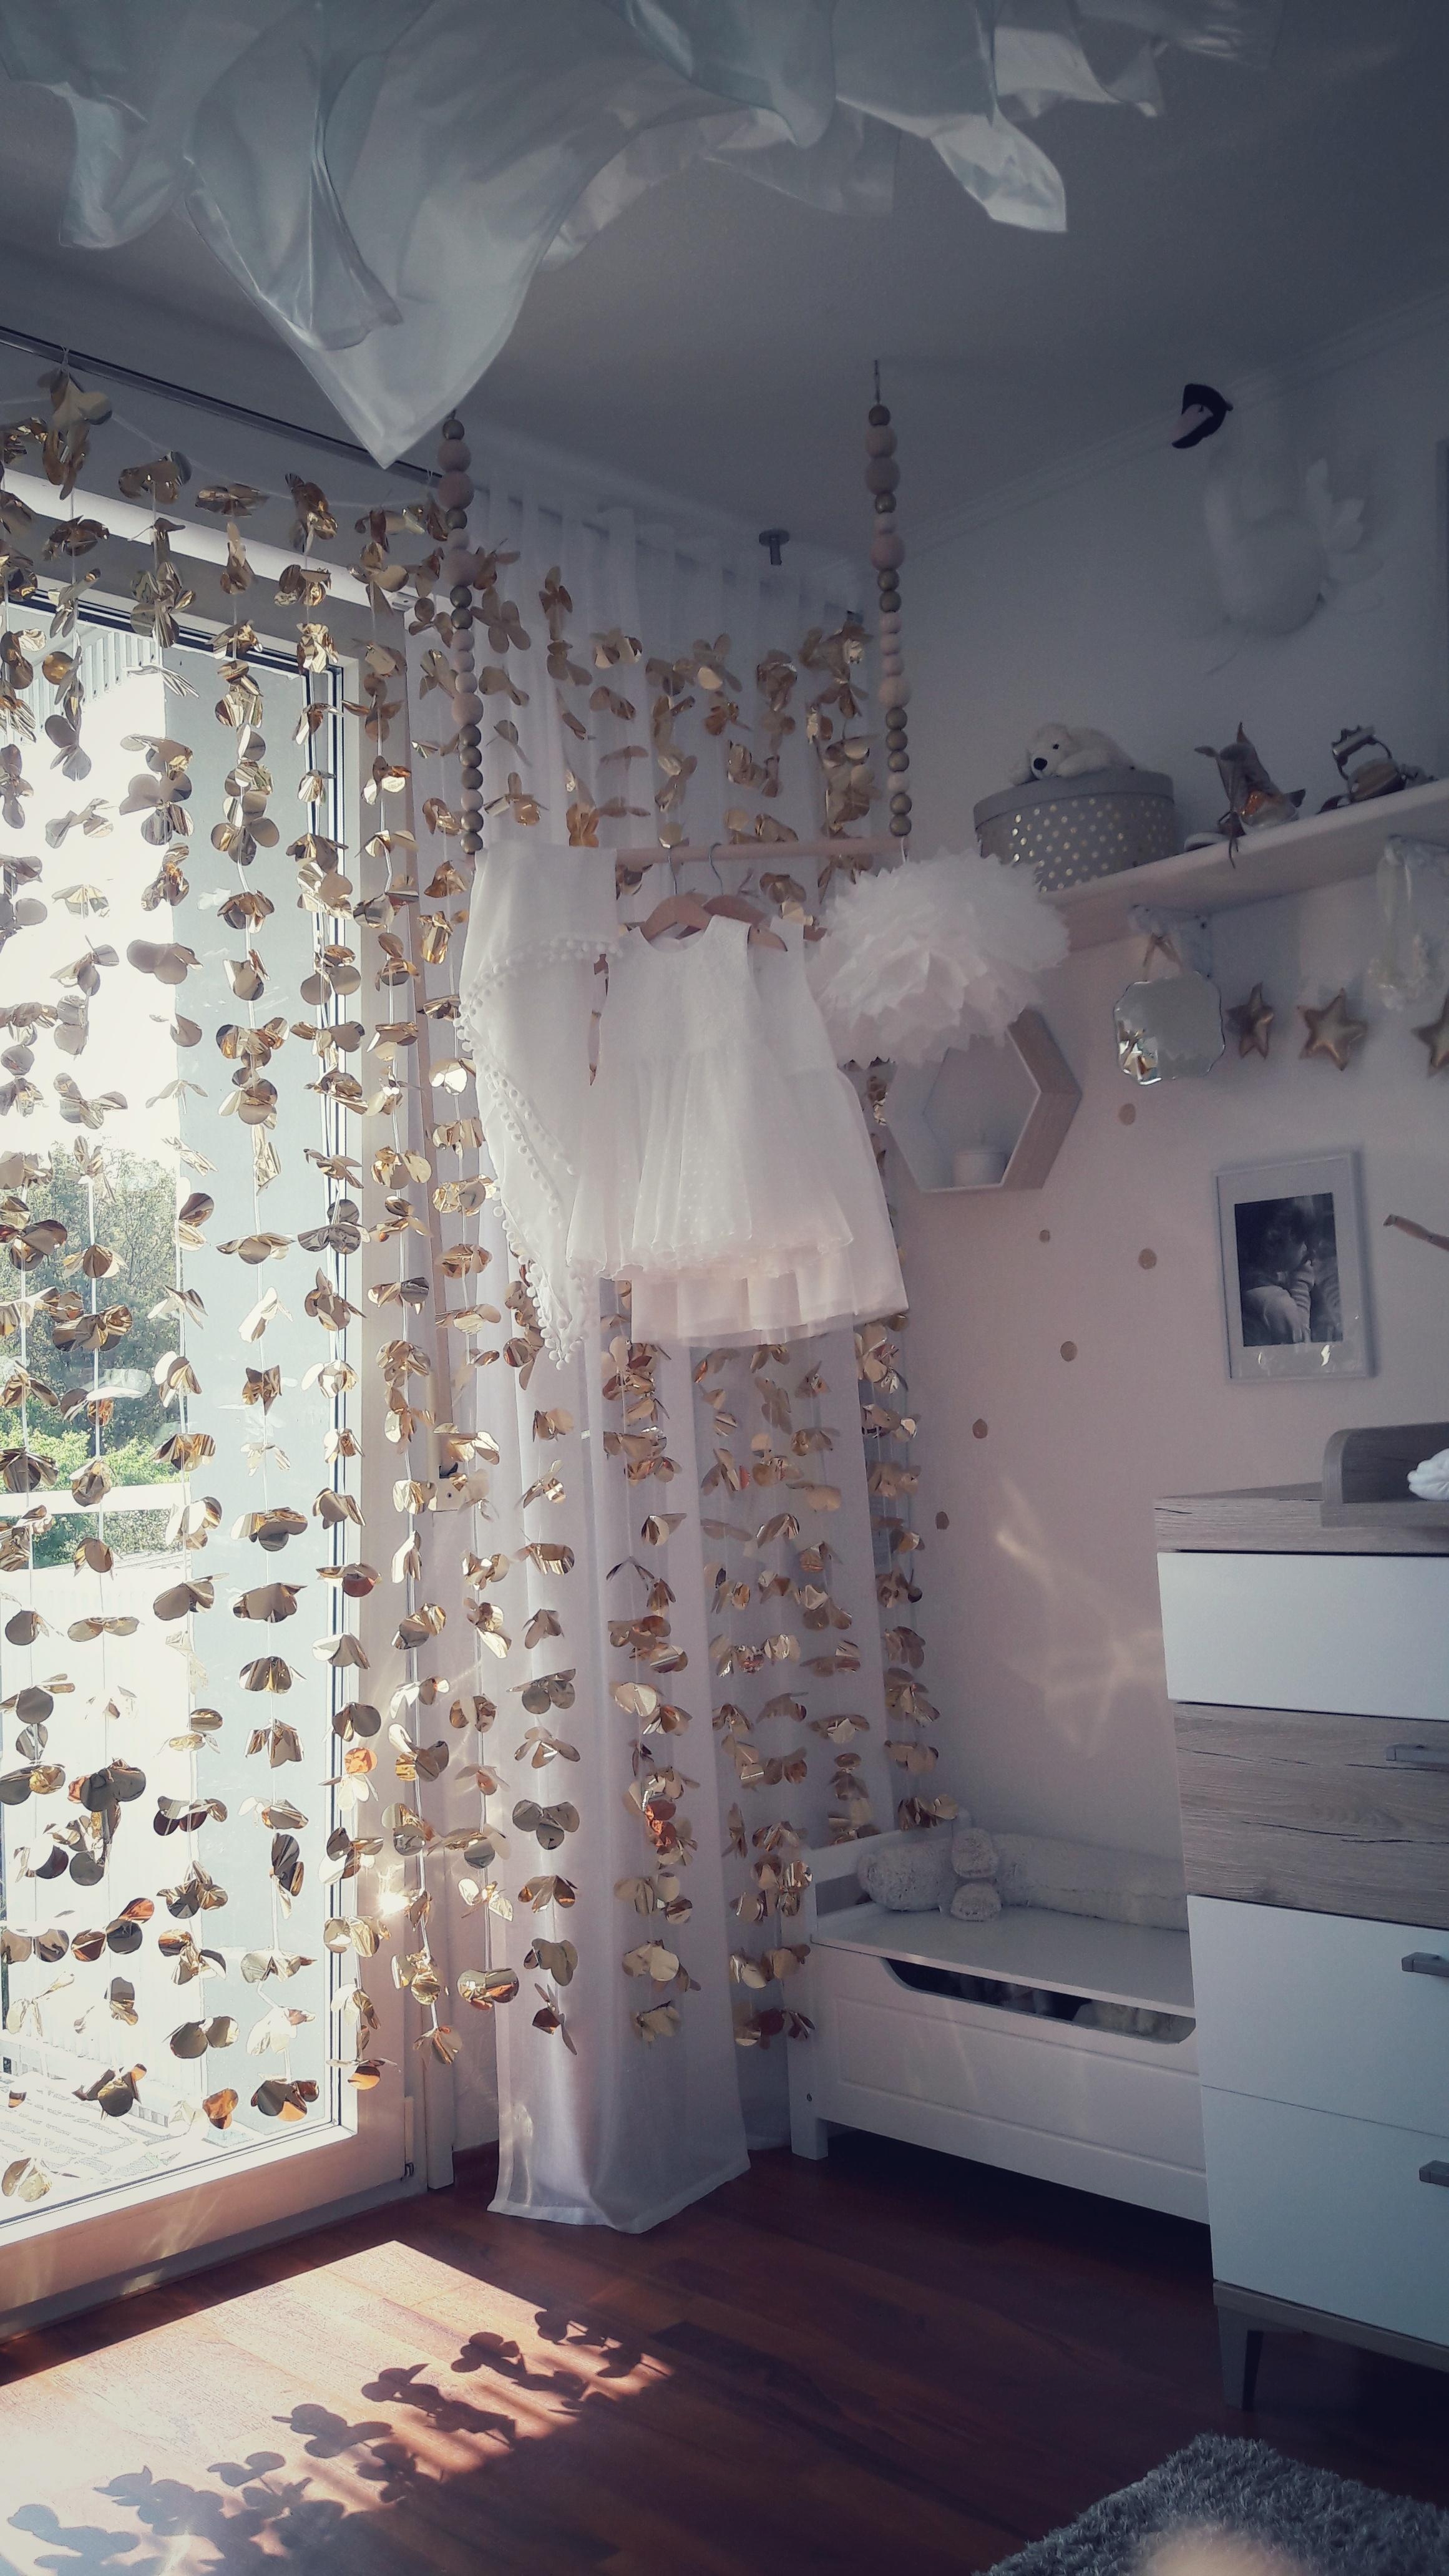 #Kinderzimmer #Golden #Effekts #Dreamland #Lovely #Things